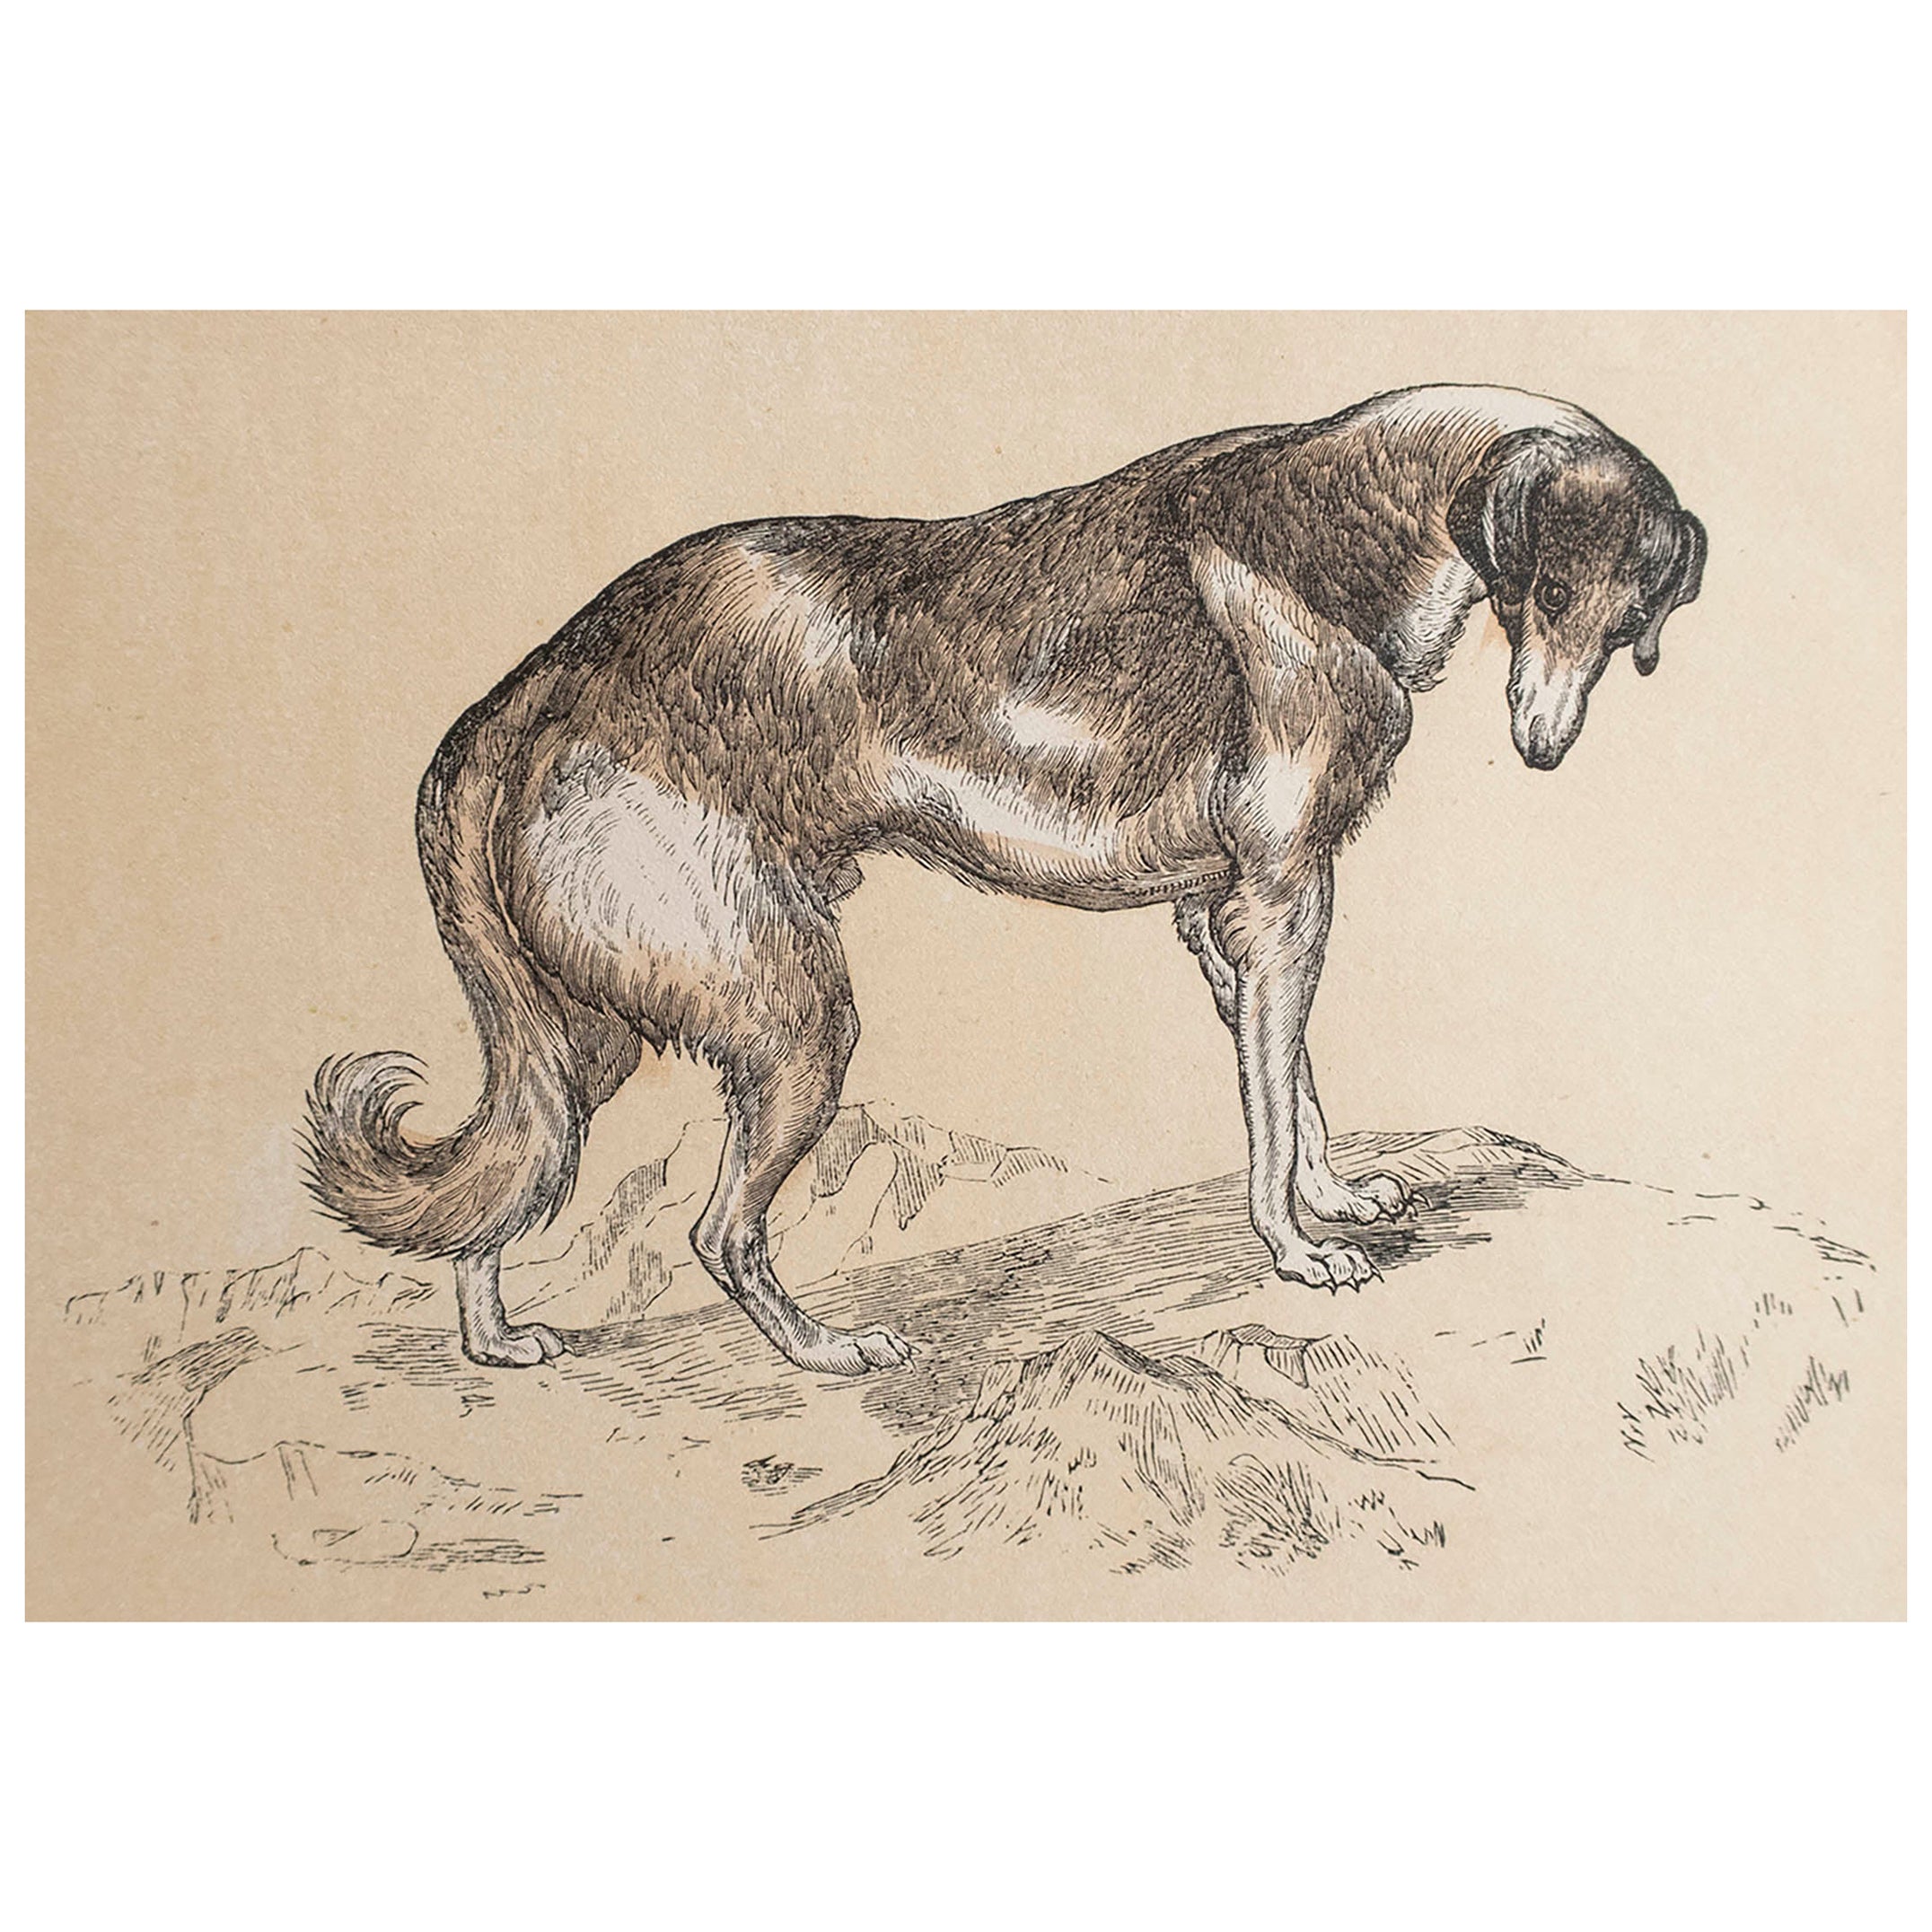  Original Antique Print of A Greyhound, circa 1850 For Sale